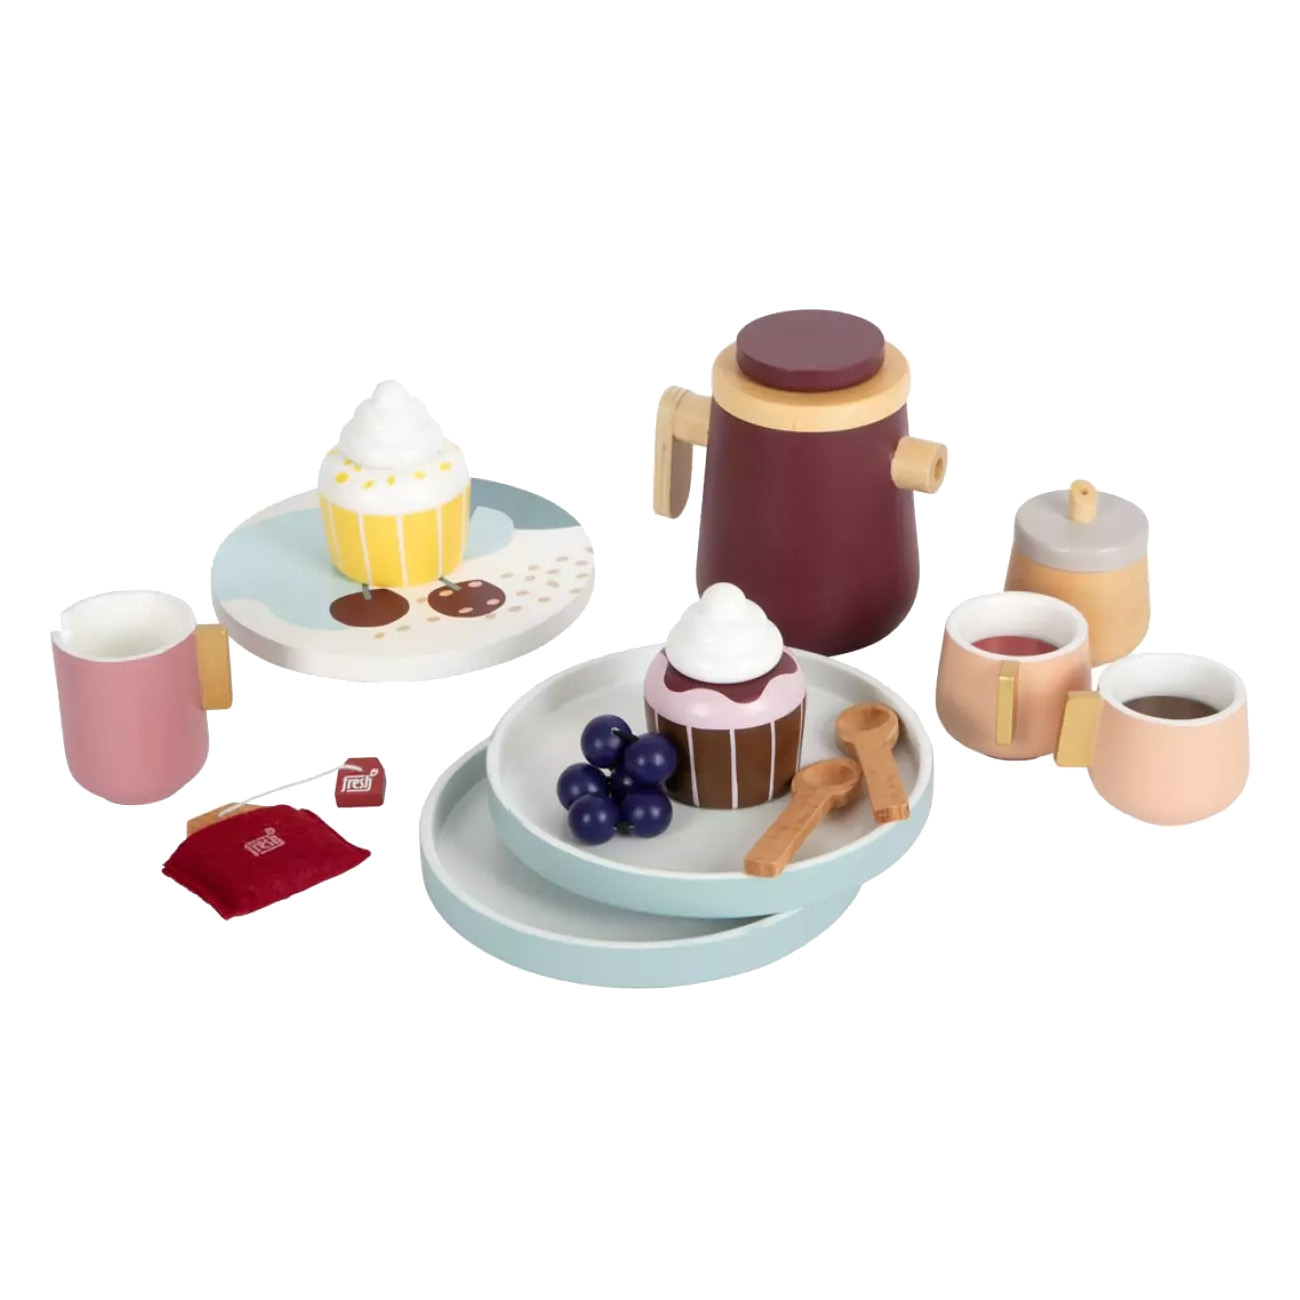 Smallfoot Kaffee und Tee-Set tasty" | Kinder-K?chen-Set | Material: Holz |  integrierte Magnete | Klare Formen, weiche Kante | abnehmbare Deckel" von Small Foot